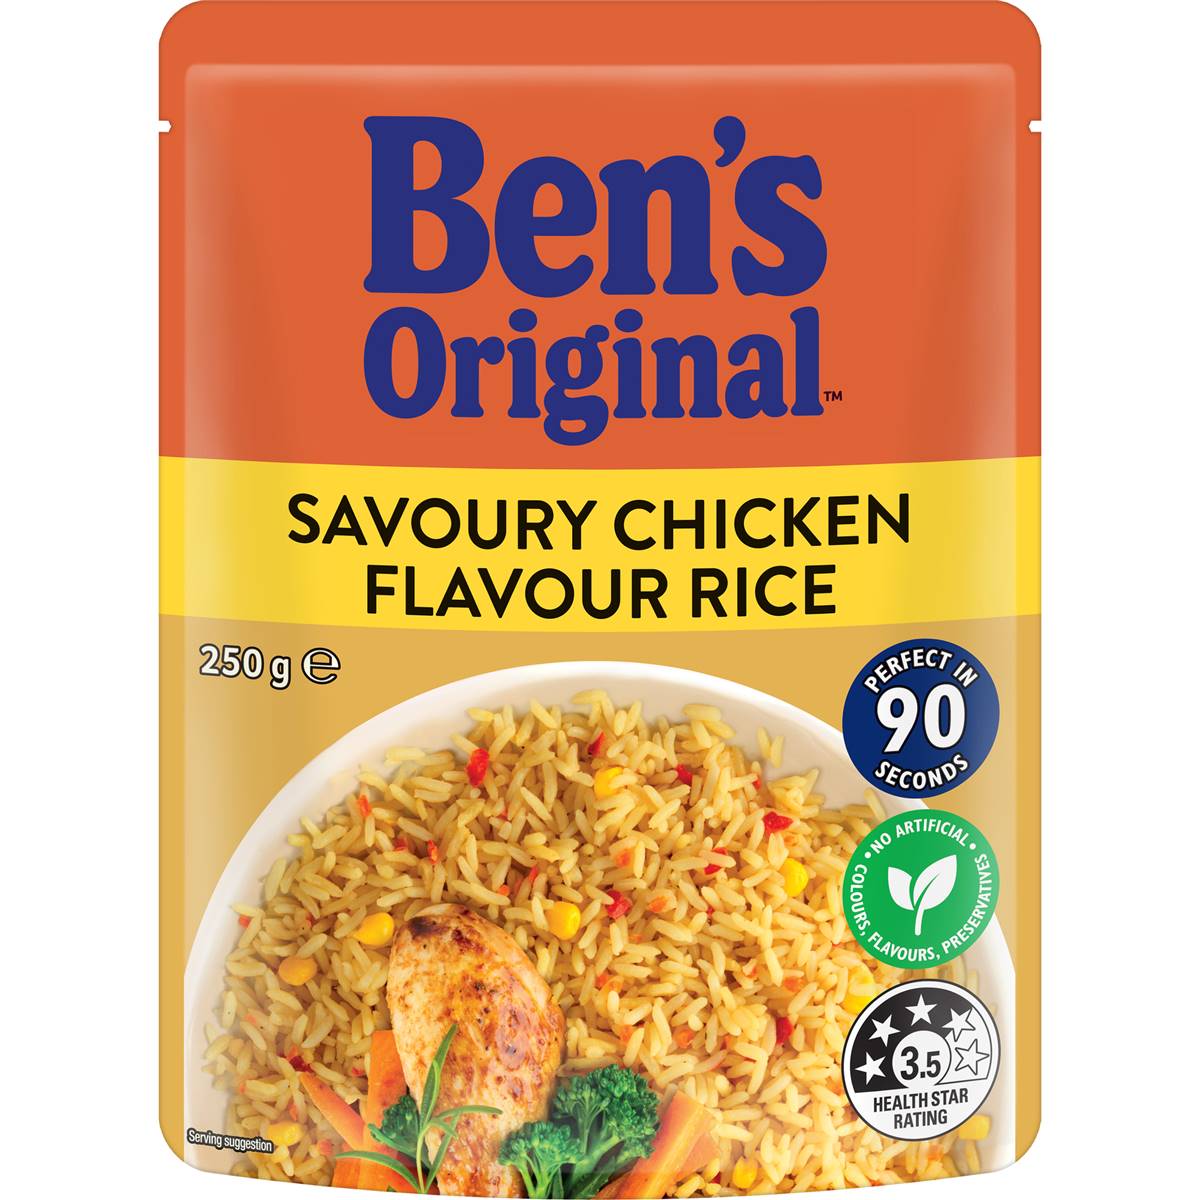 Ben's Original Savoury Chicken Flavour Microwave Rice Pouch 250g